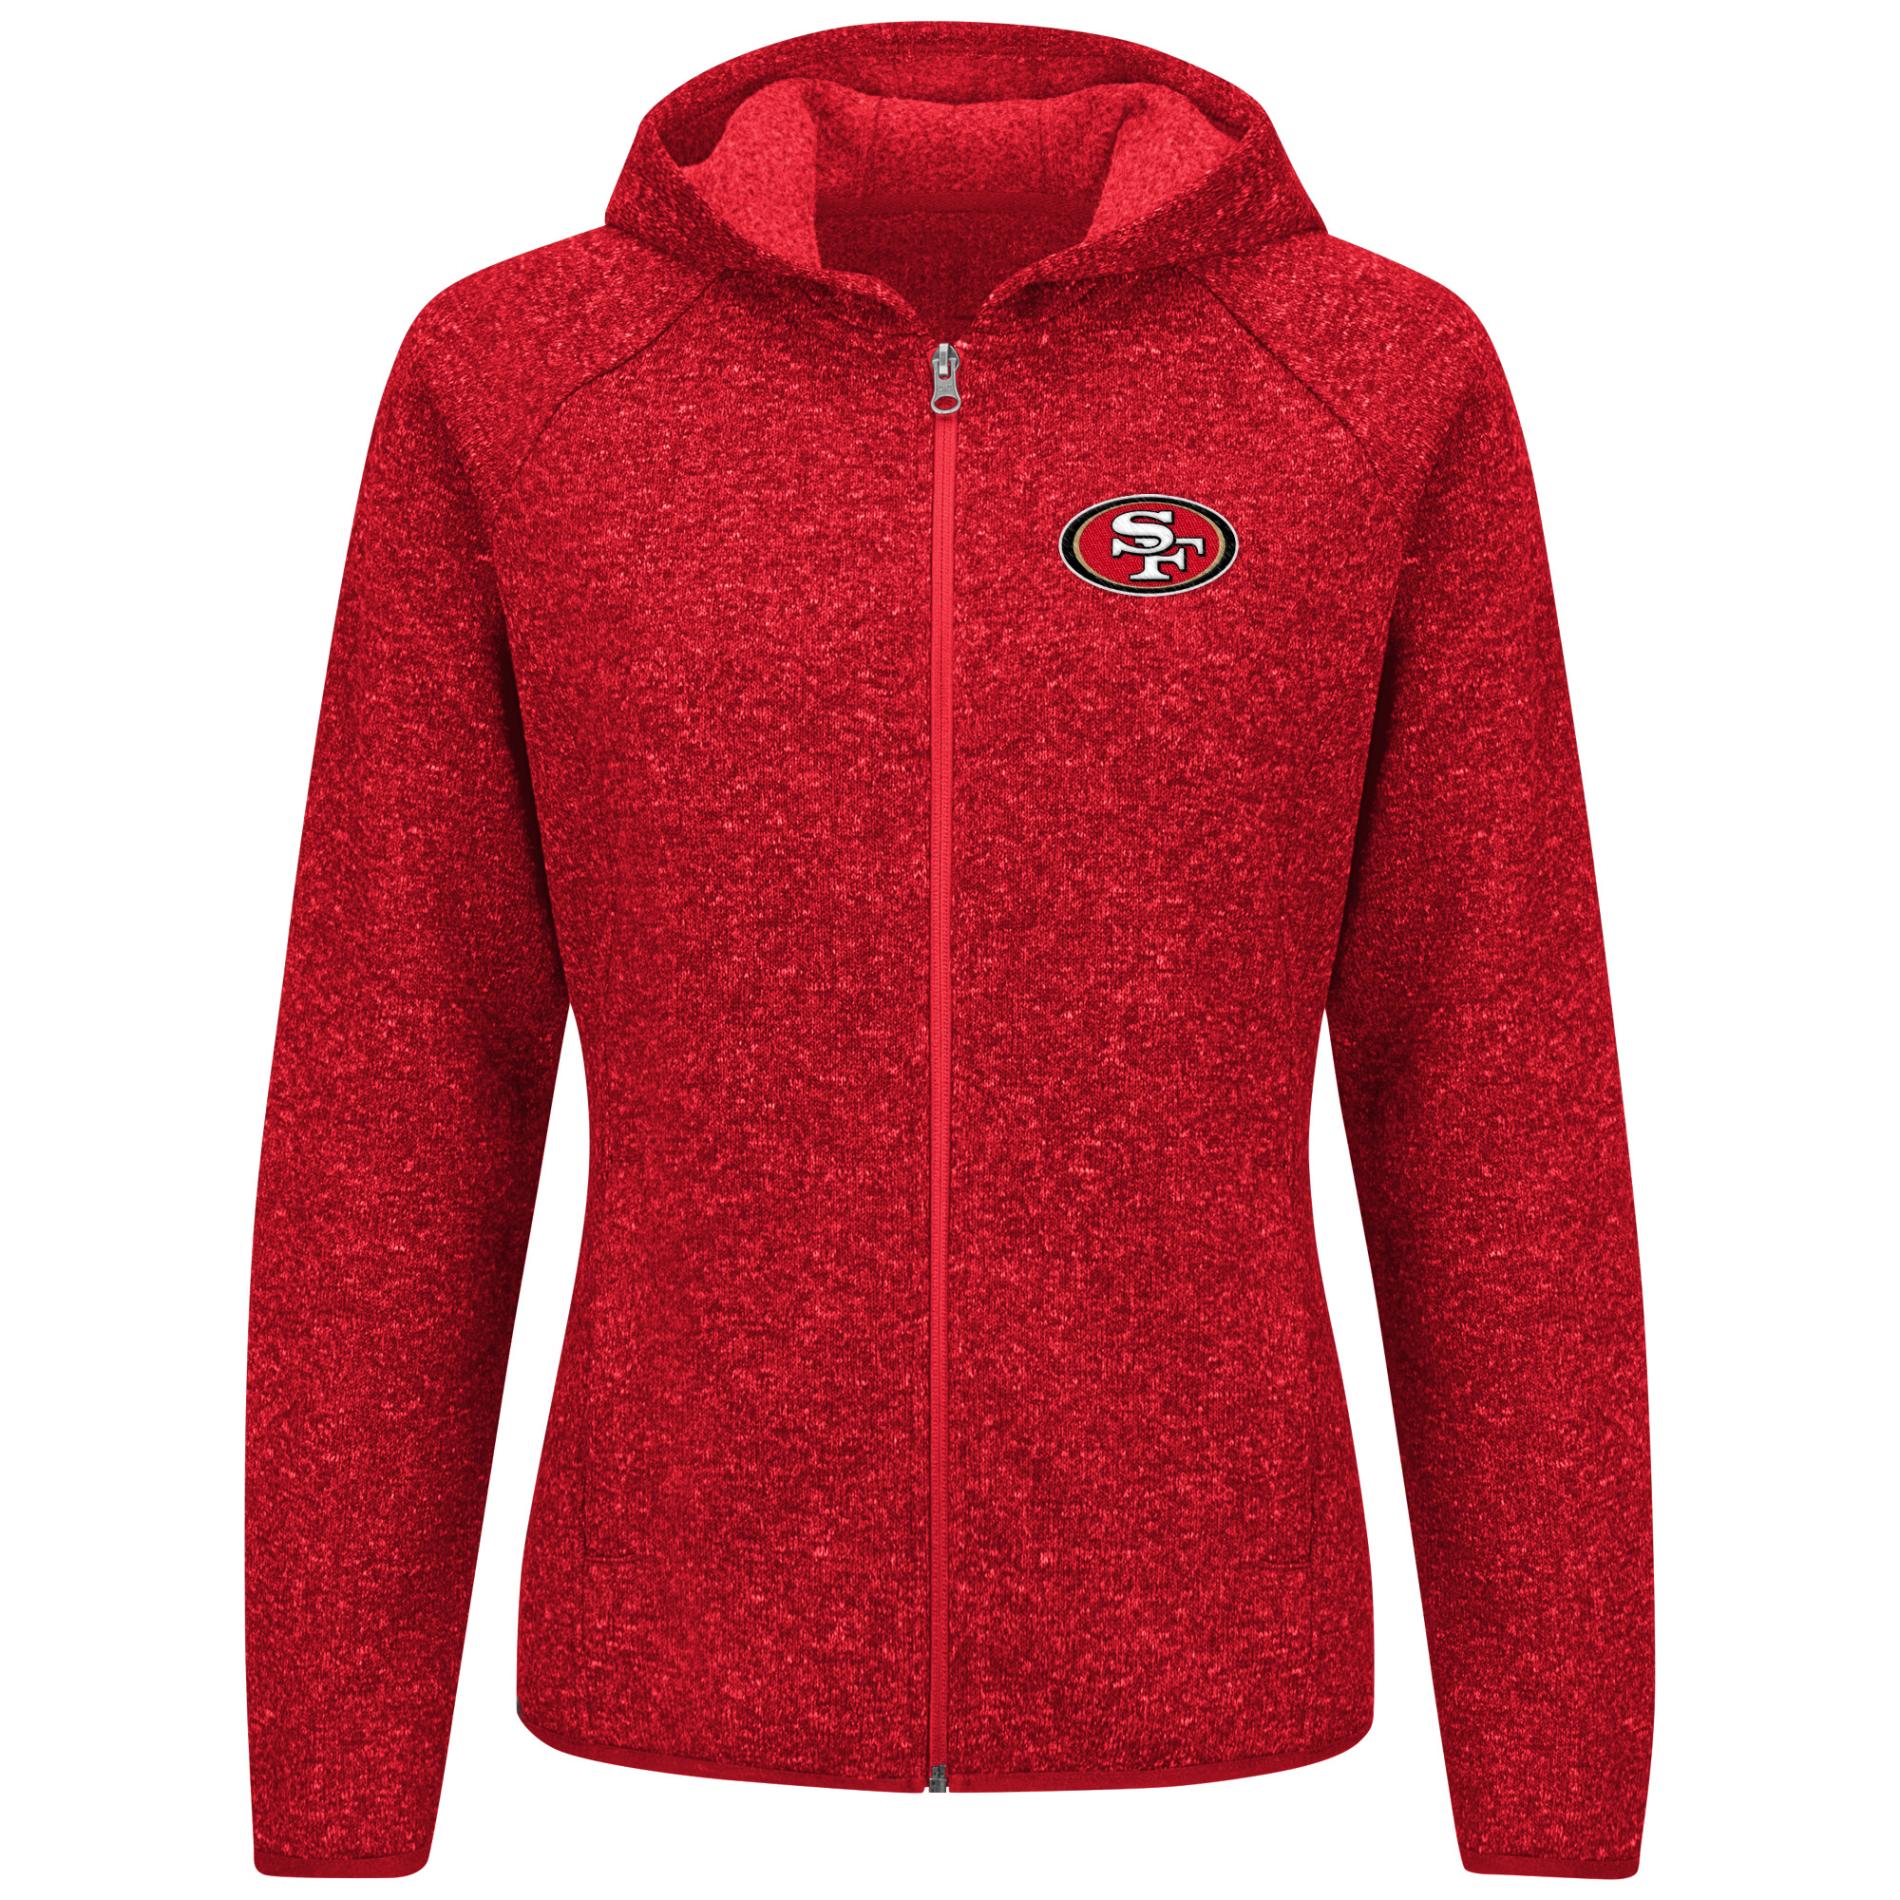 NFL Women's Hoodie Jacket - San Francisco 49ers